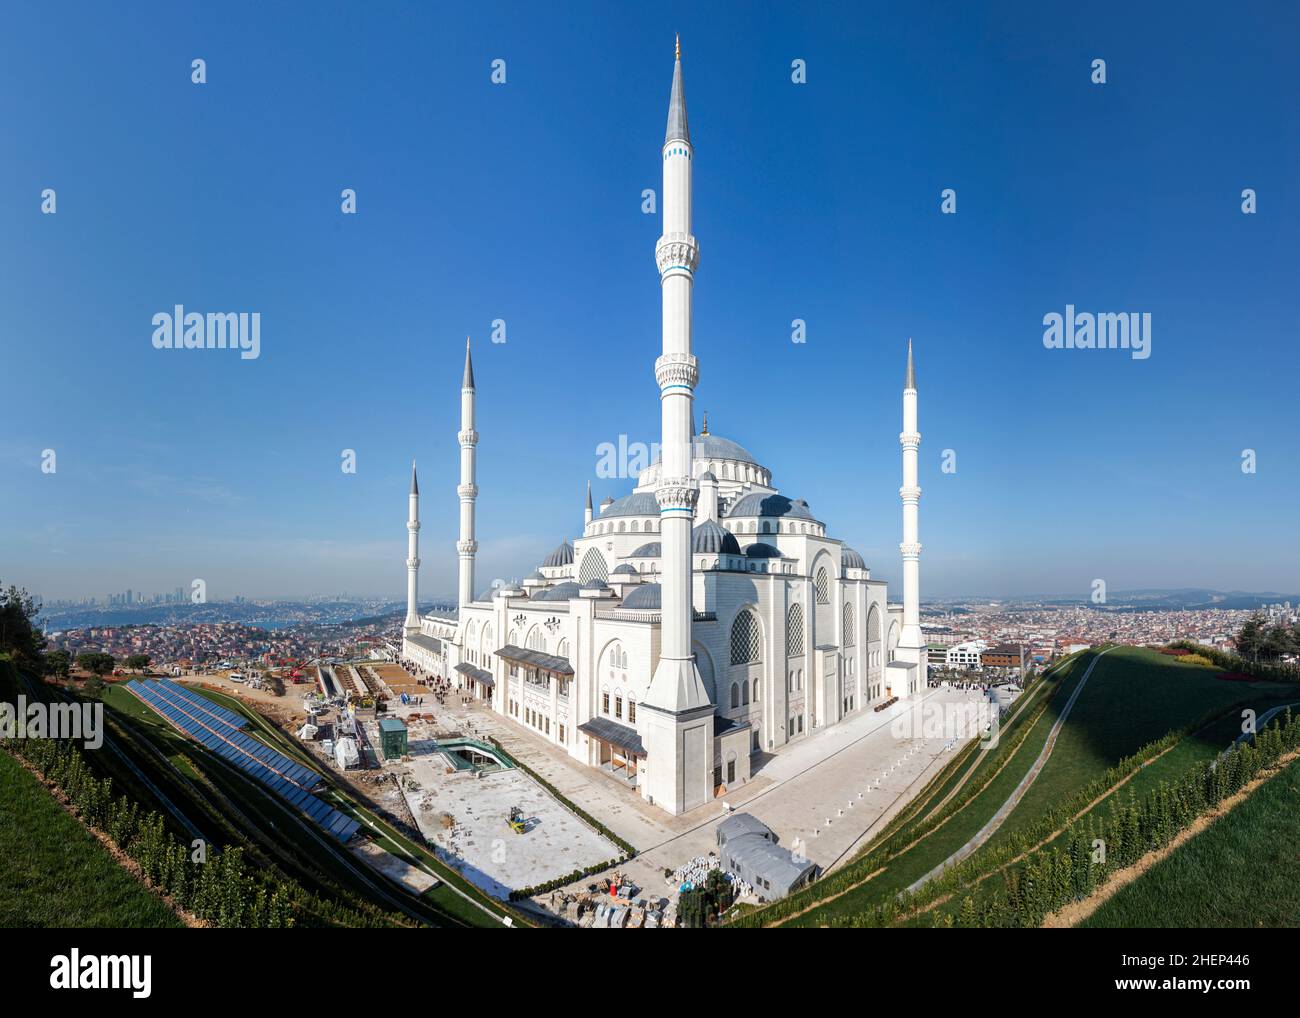 Vue panoramique sur la mosquée Camlica et le paysage urbain d'Istanbul.La mosquée Camlica est la plus grande mosquée de Turquie. Banque D'Images